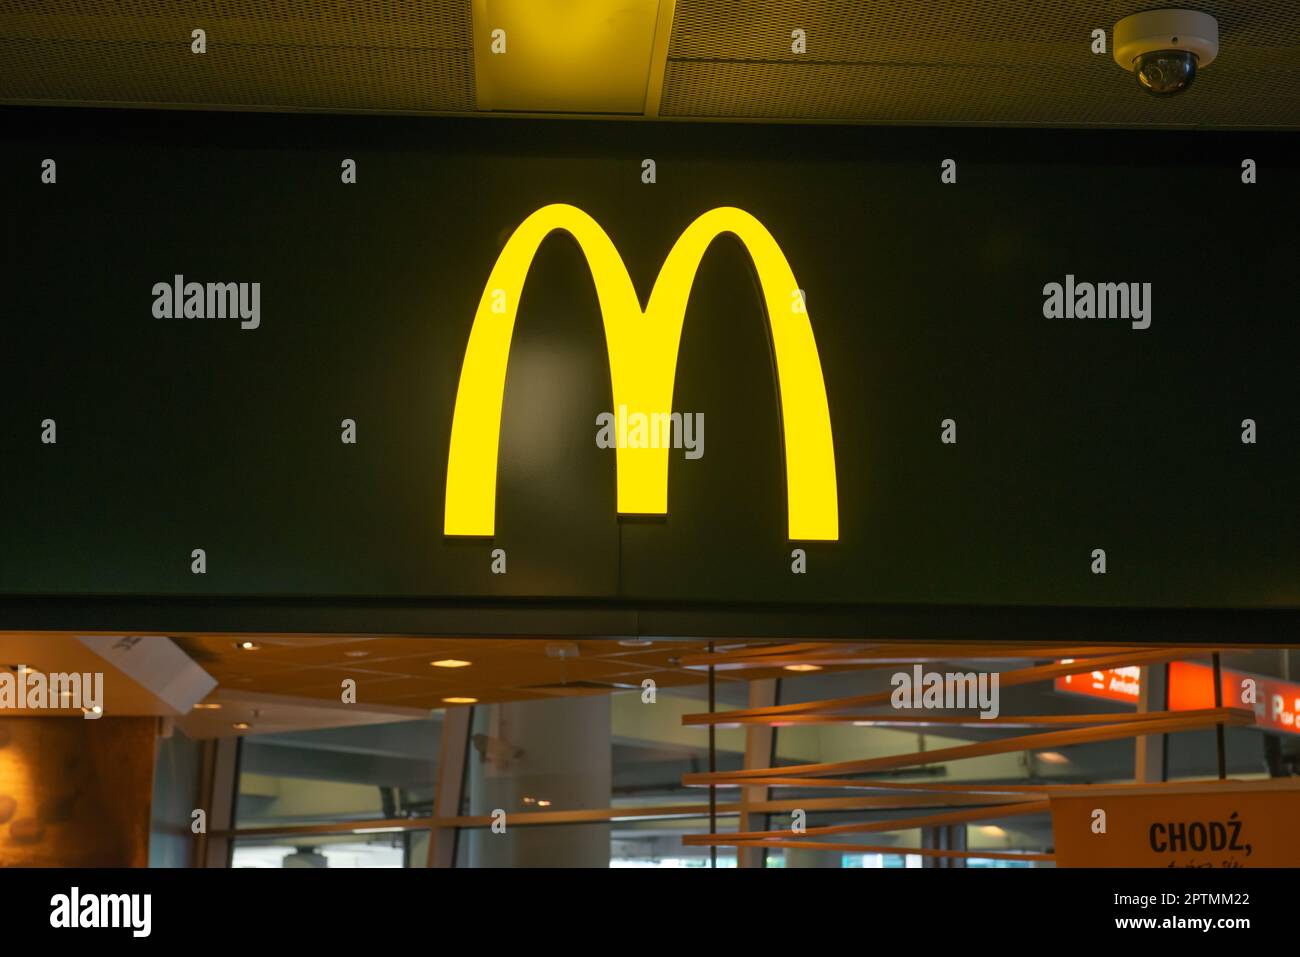 WARSCHAU, POLEN - 05. AUGUST 2022: Schild mit McDonald's Restaurant-Logo Stockfoto